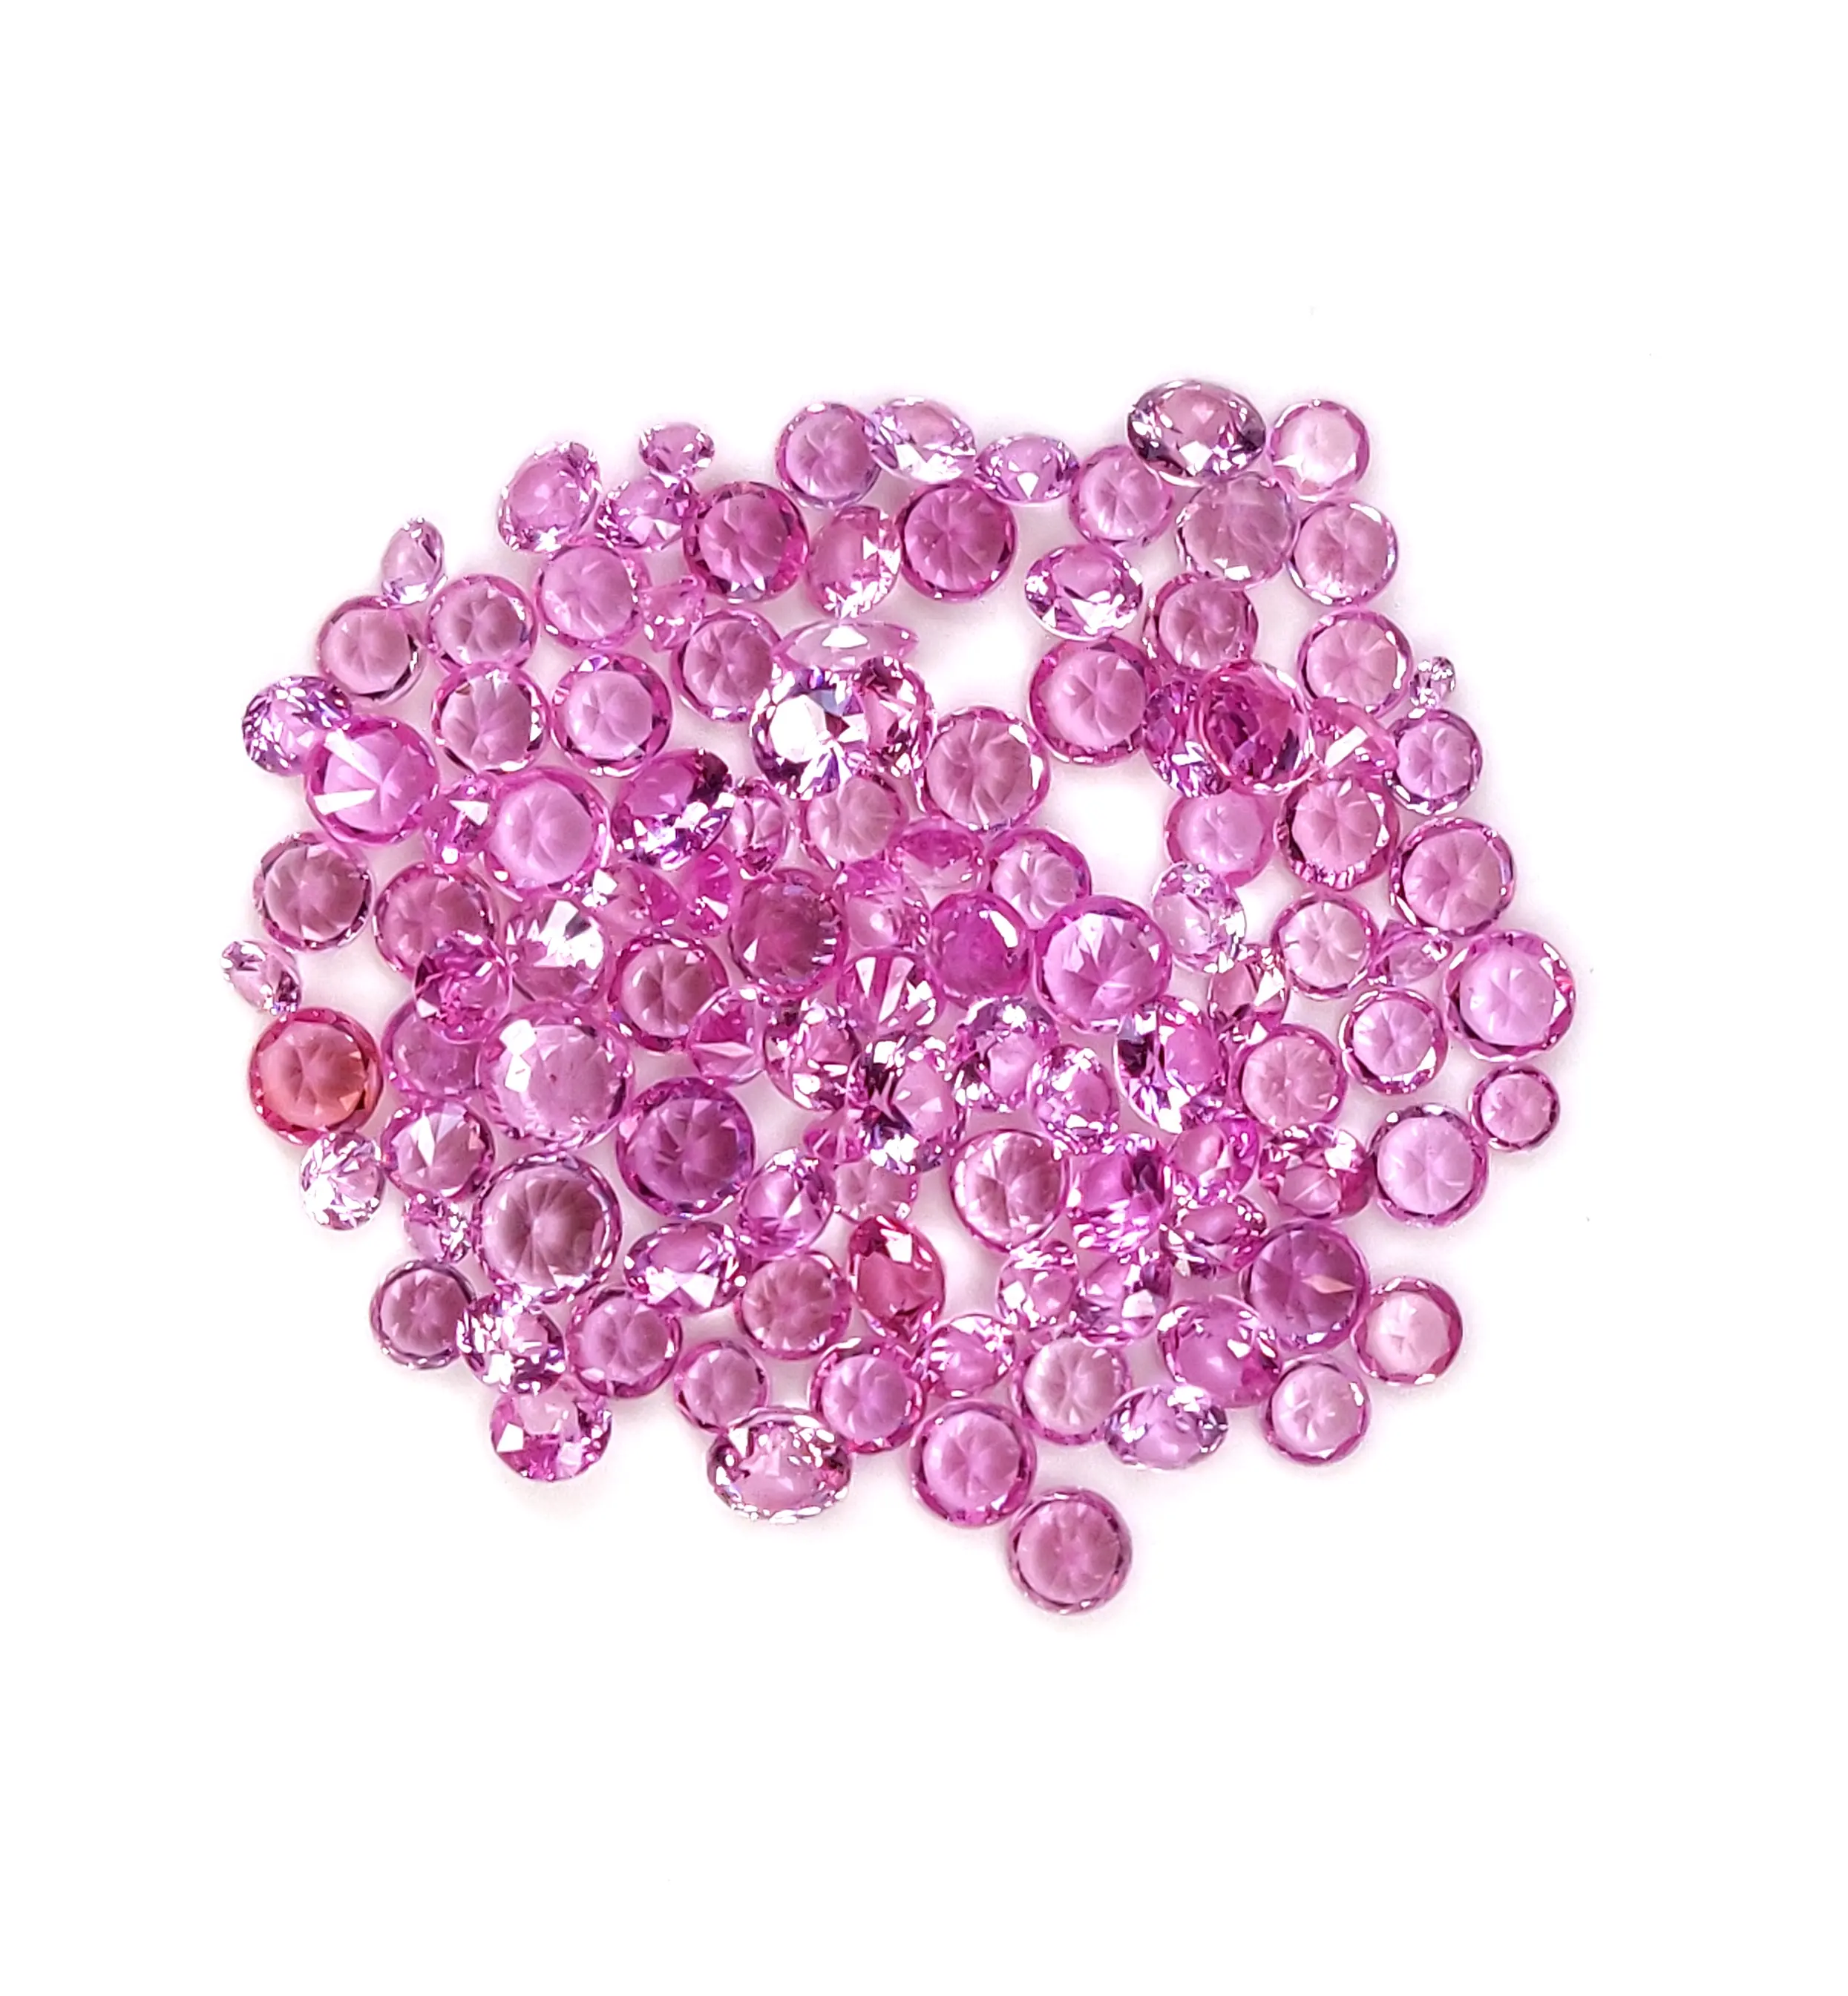 Laboratorio naturale zaffiro rosa 3x5mm sfaccettato pietre sfuse per gioielli disponibili a prezzi abbordabili